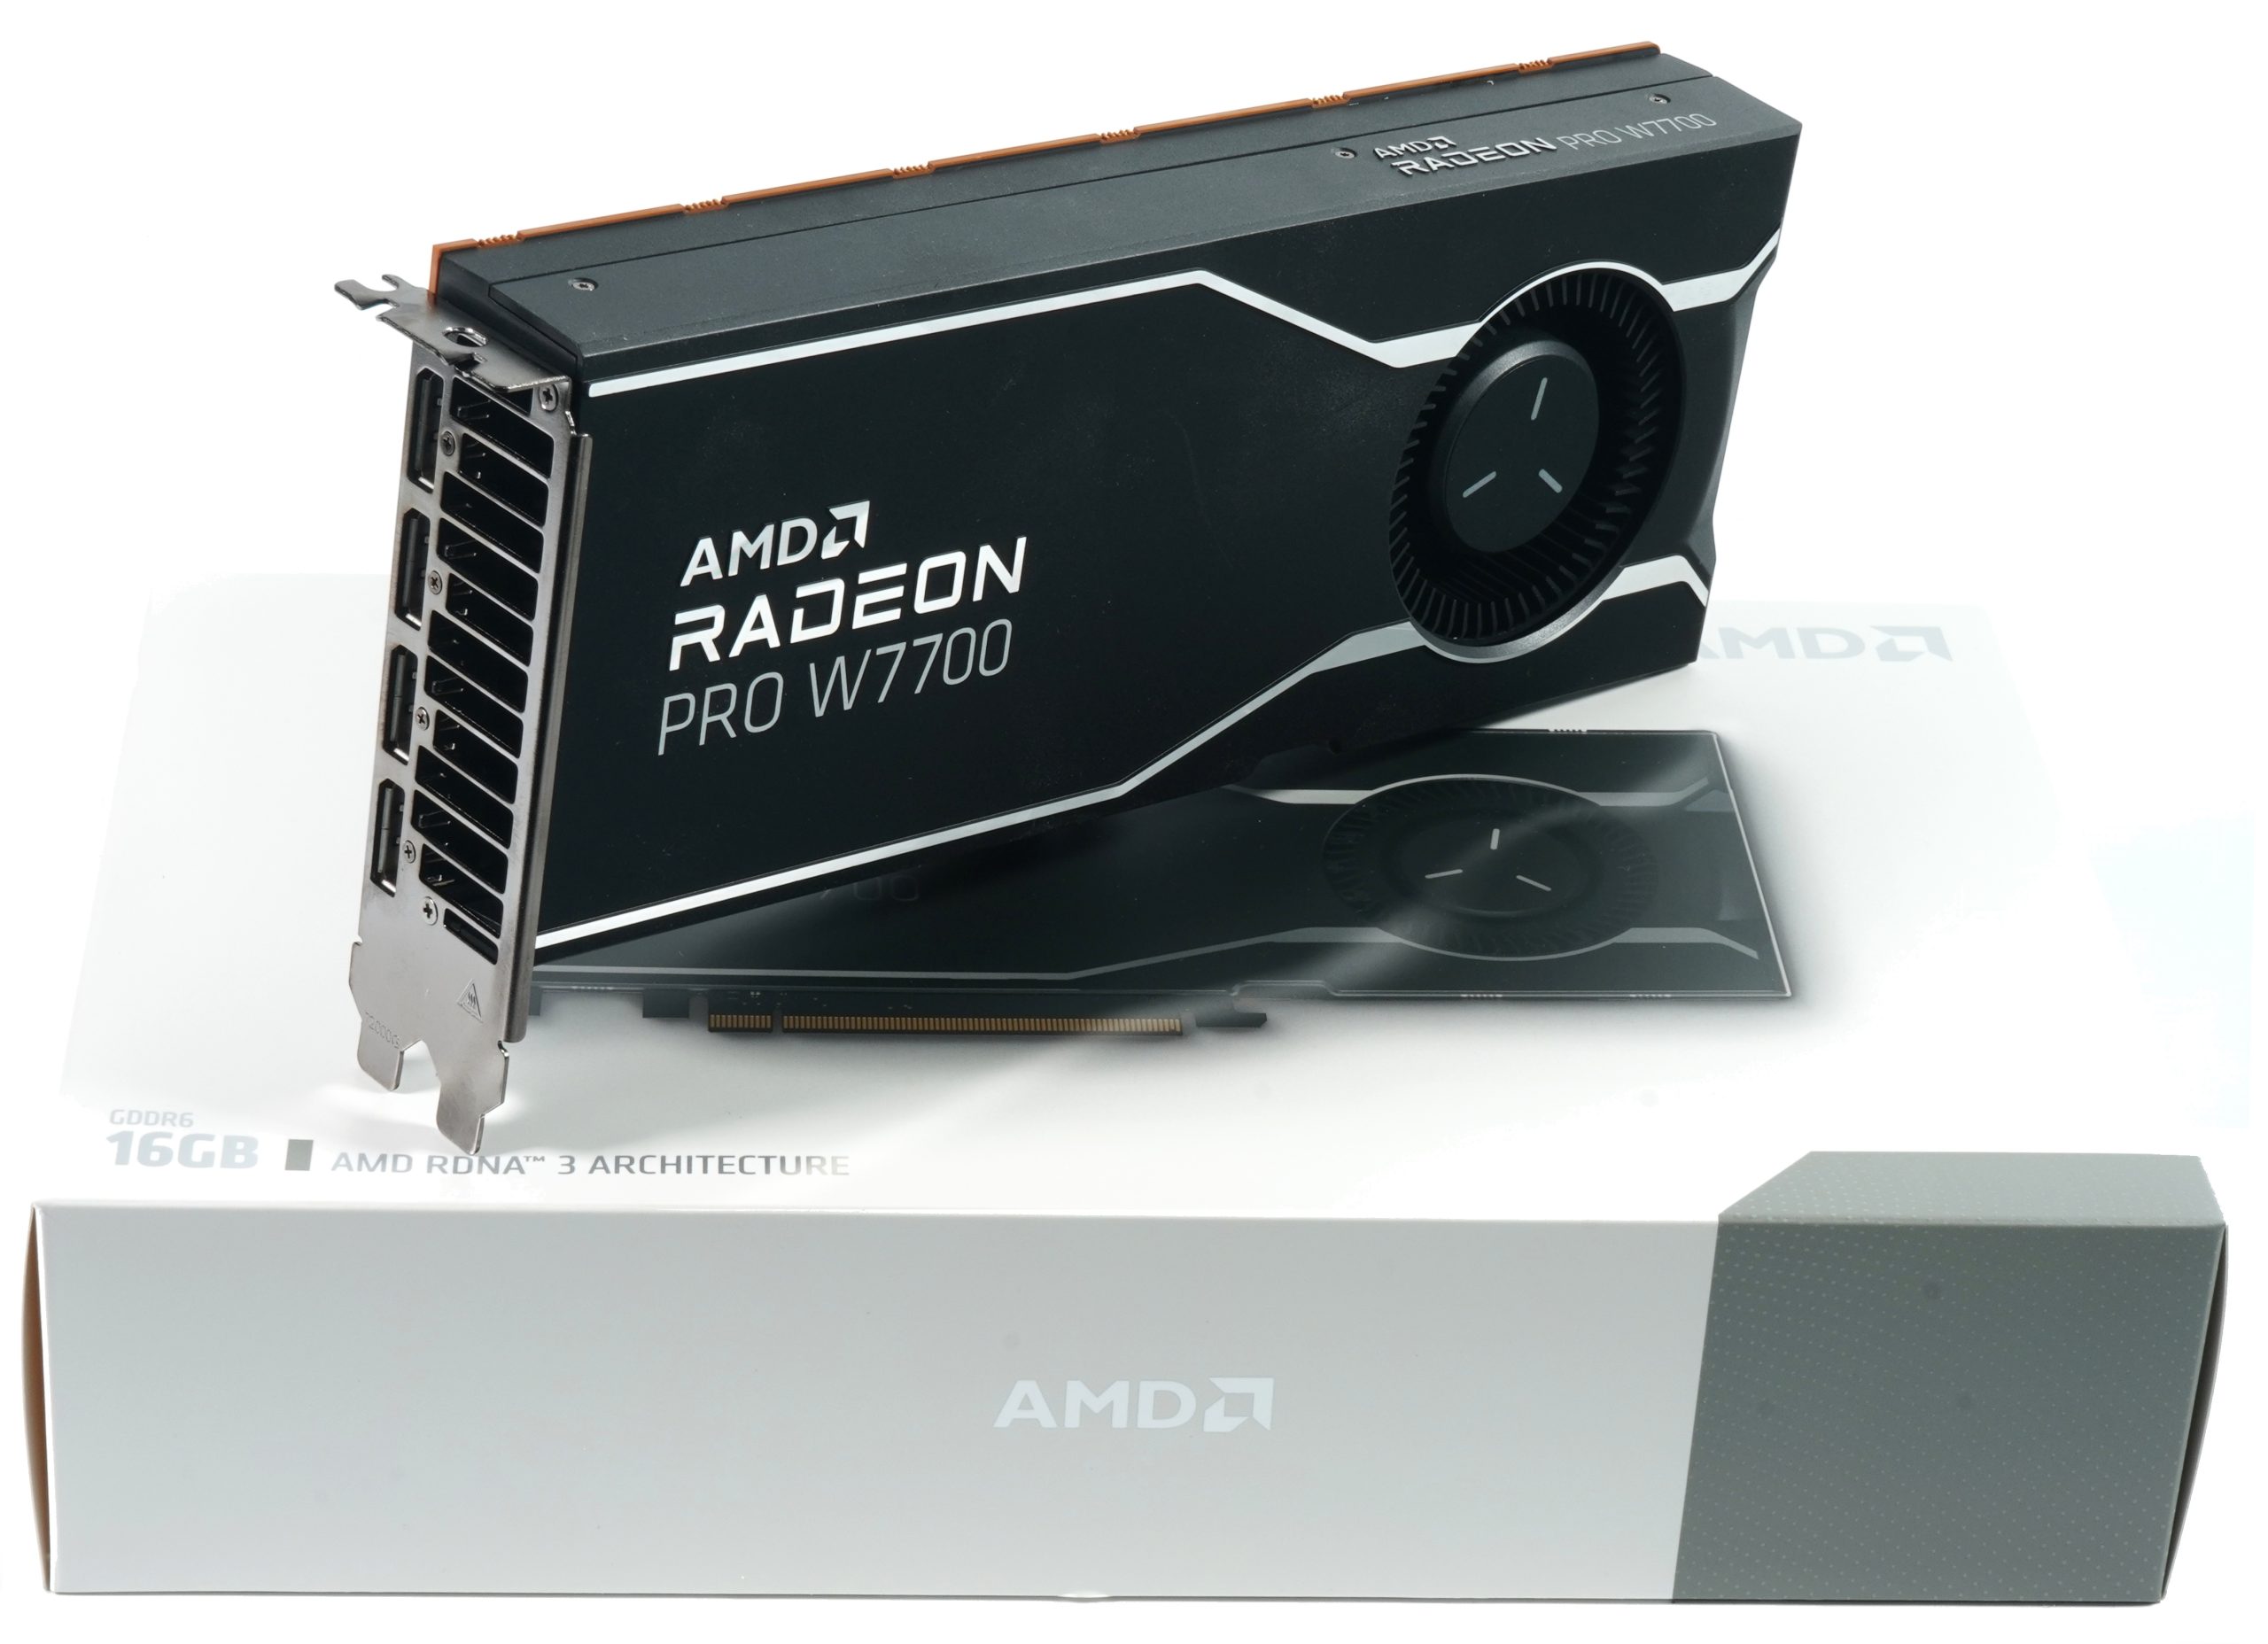 AMD Radeon Pro W7700 im Test - Wo steht AMDs Mittelklasse-Workstation-Grafikkarte im Arbeitsalltag? Mit Teardown und Materialanalyse